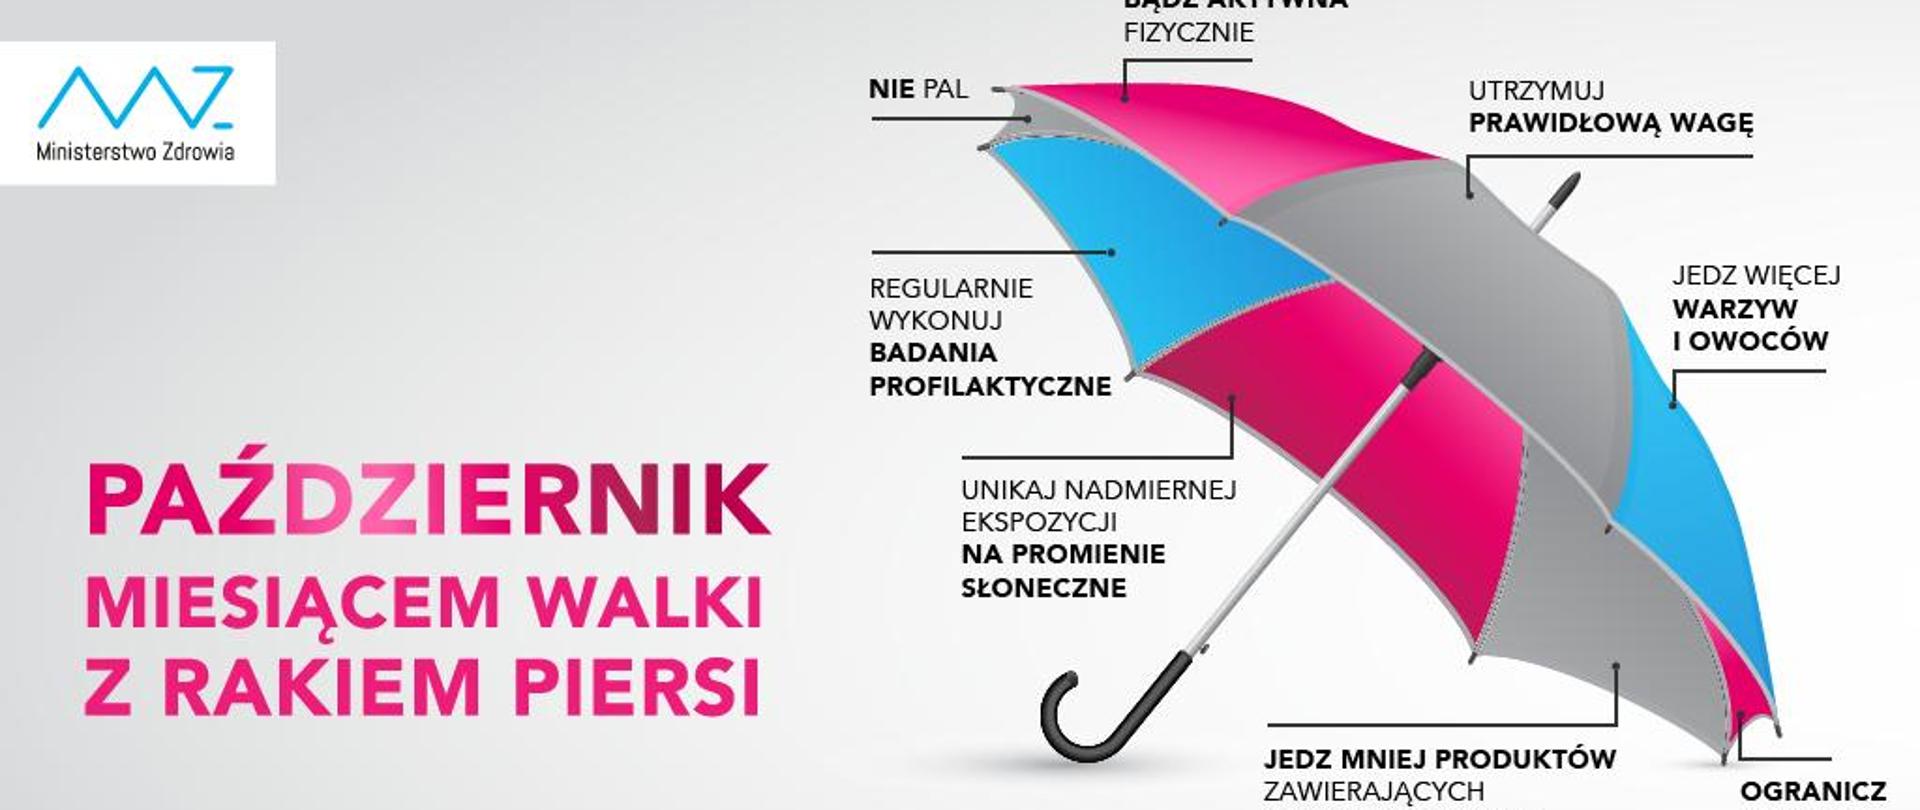 Grafika -parasol - październik miesiąc walki z rakiem piersi